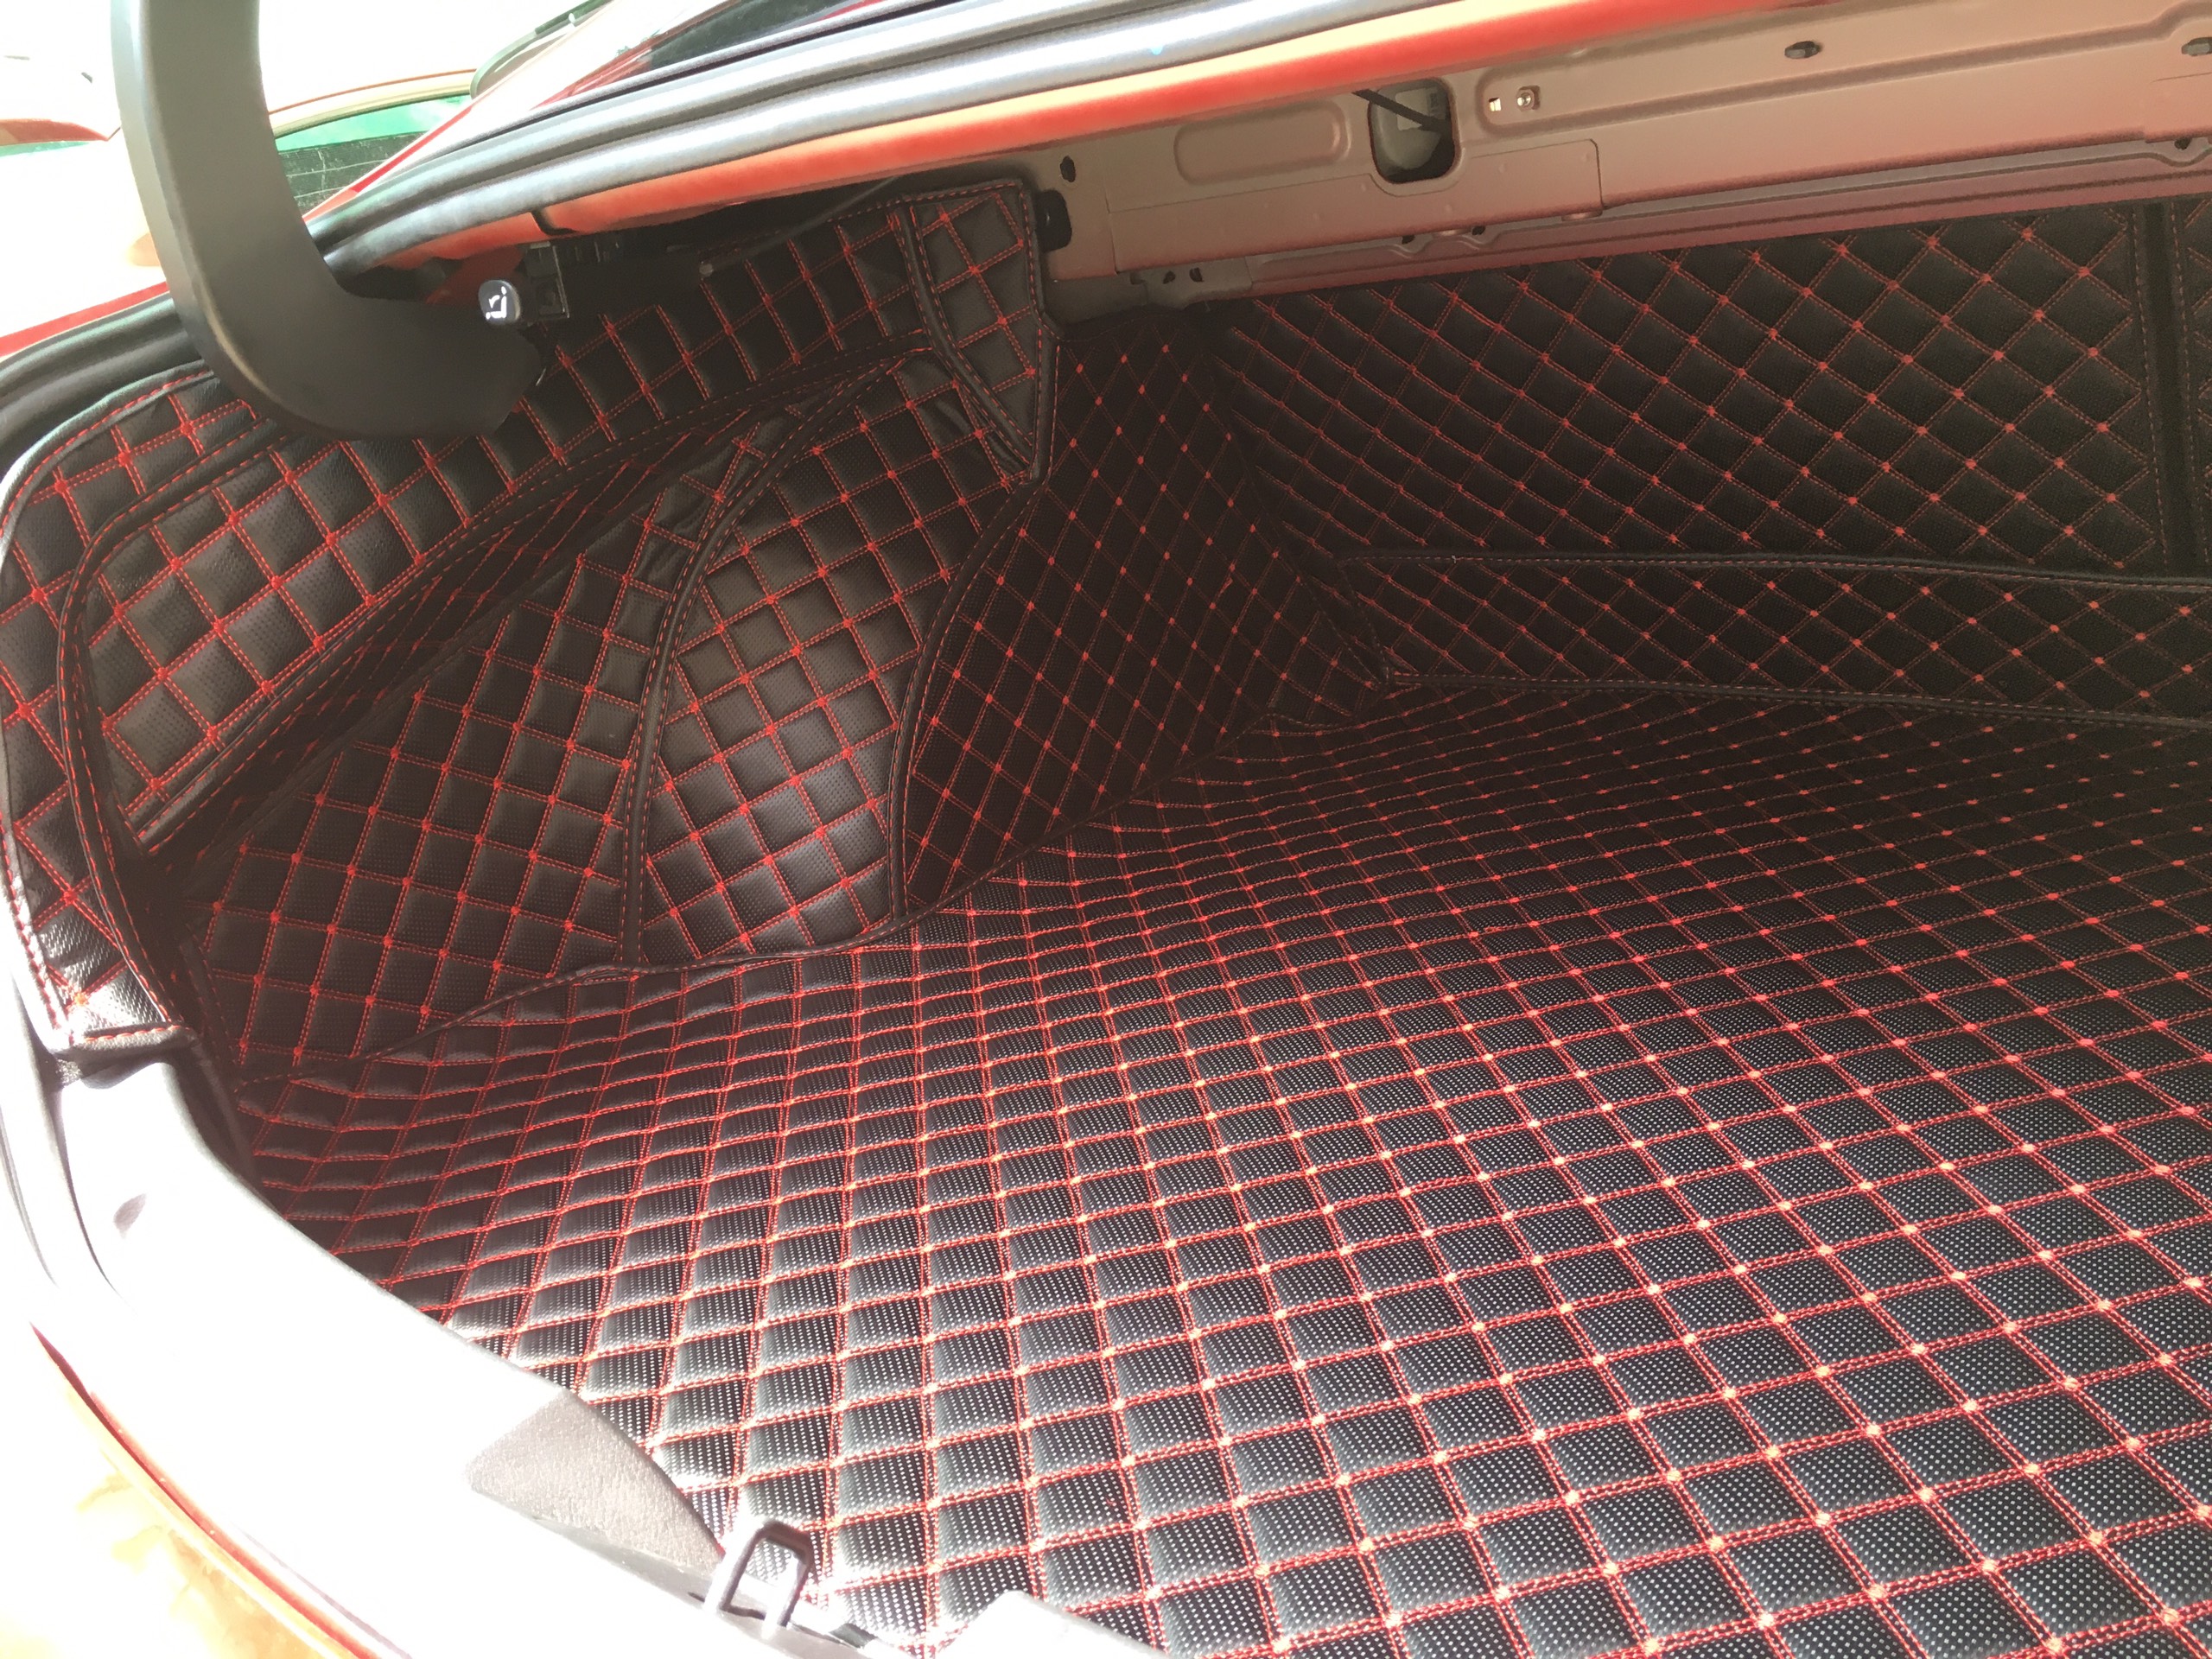 Thảm sàn ô tô 6D dành cho xe Mazda 3 2020 da Carbon màu C2.2 + R2 full cốp hình ảnh thật chụp bằng điện thoại không chỉnh sửa có video hướng dẫn lắp đặt tại nhà